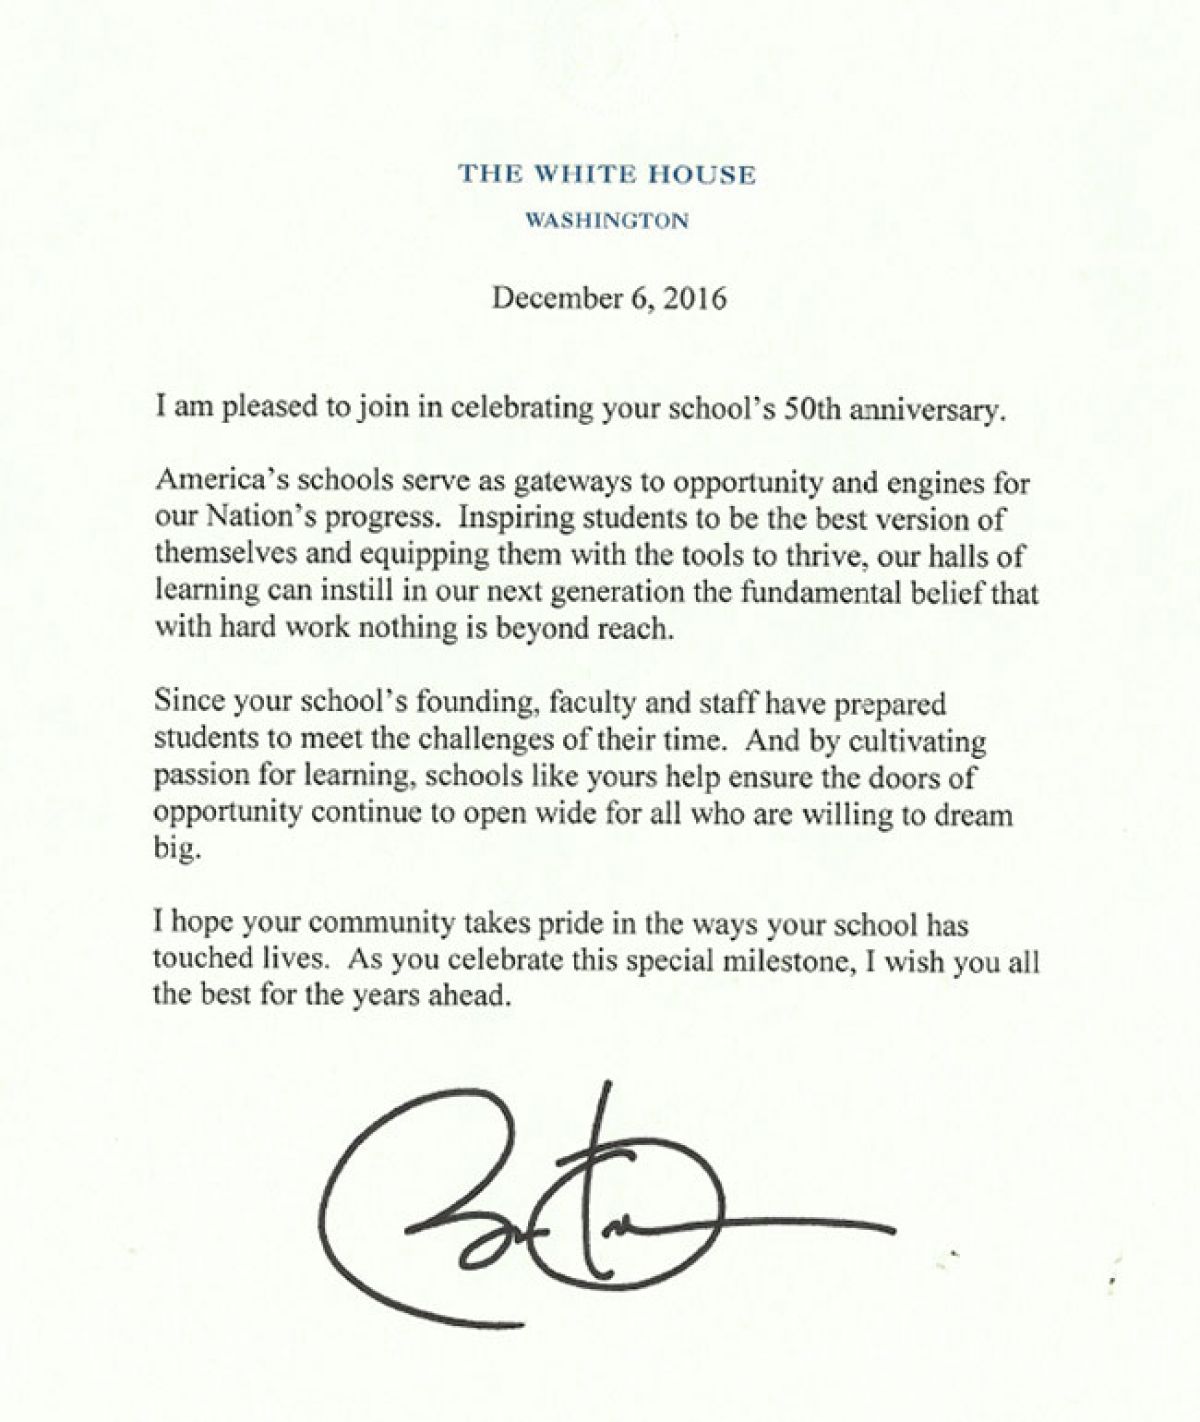 2016 President Obama Letter celebrating 50th anniversary